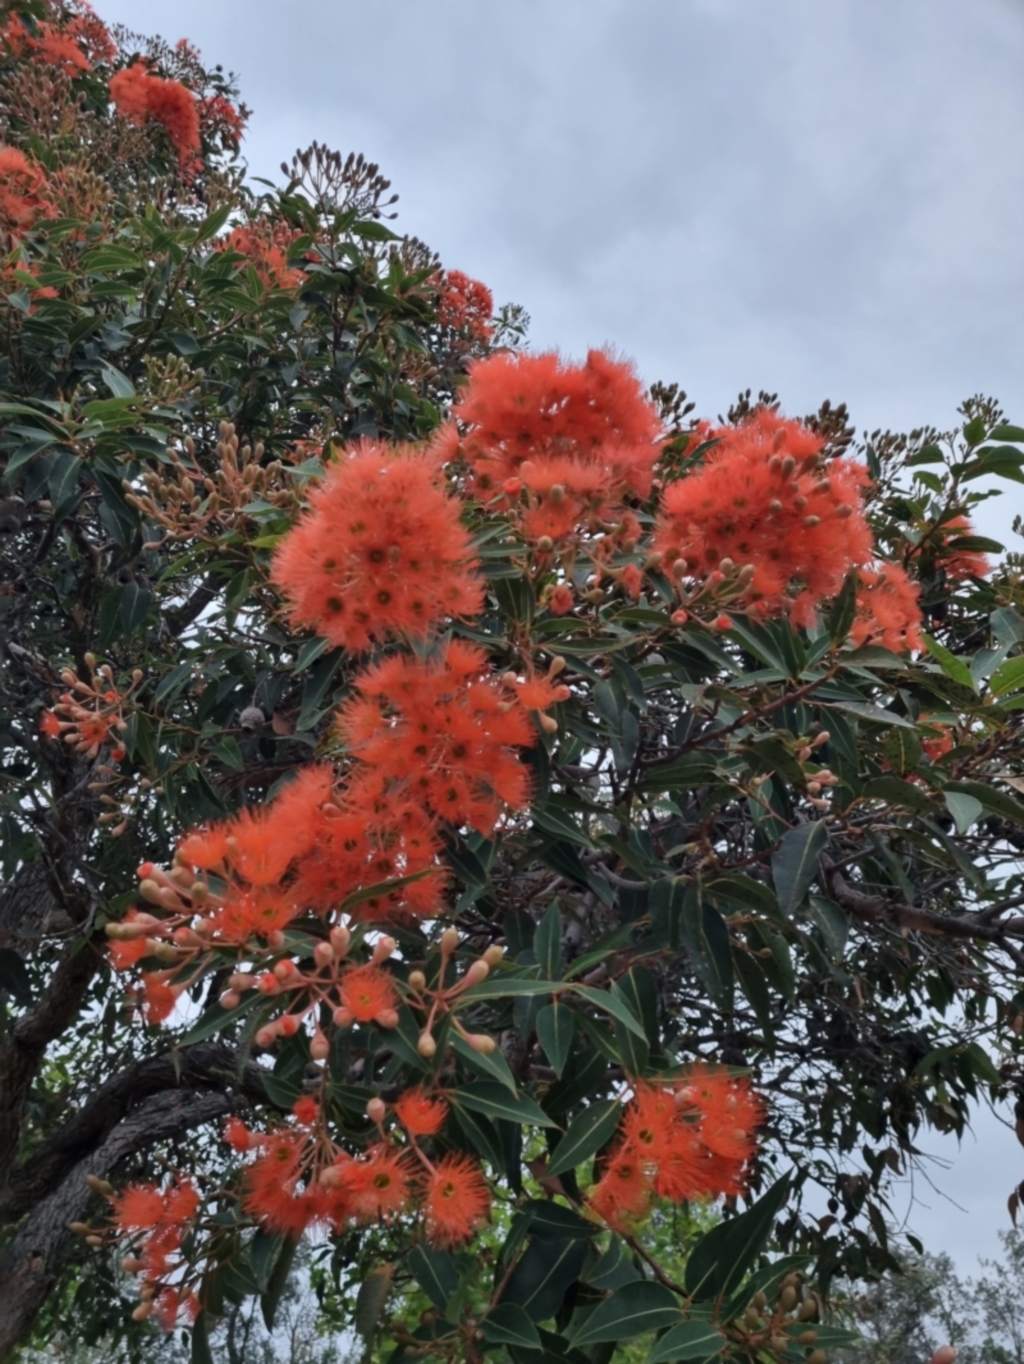 Corymbia ficifolia at Eden, NSW - 3 Dec 2021